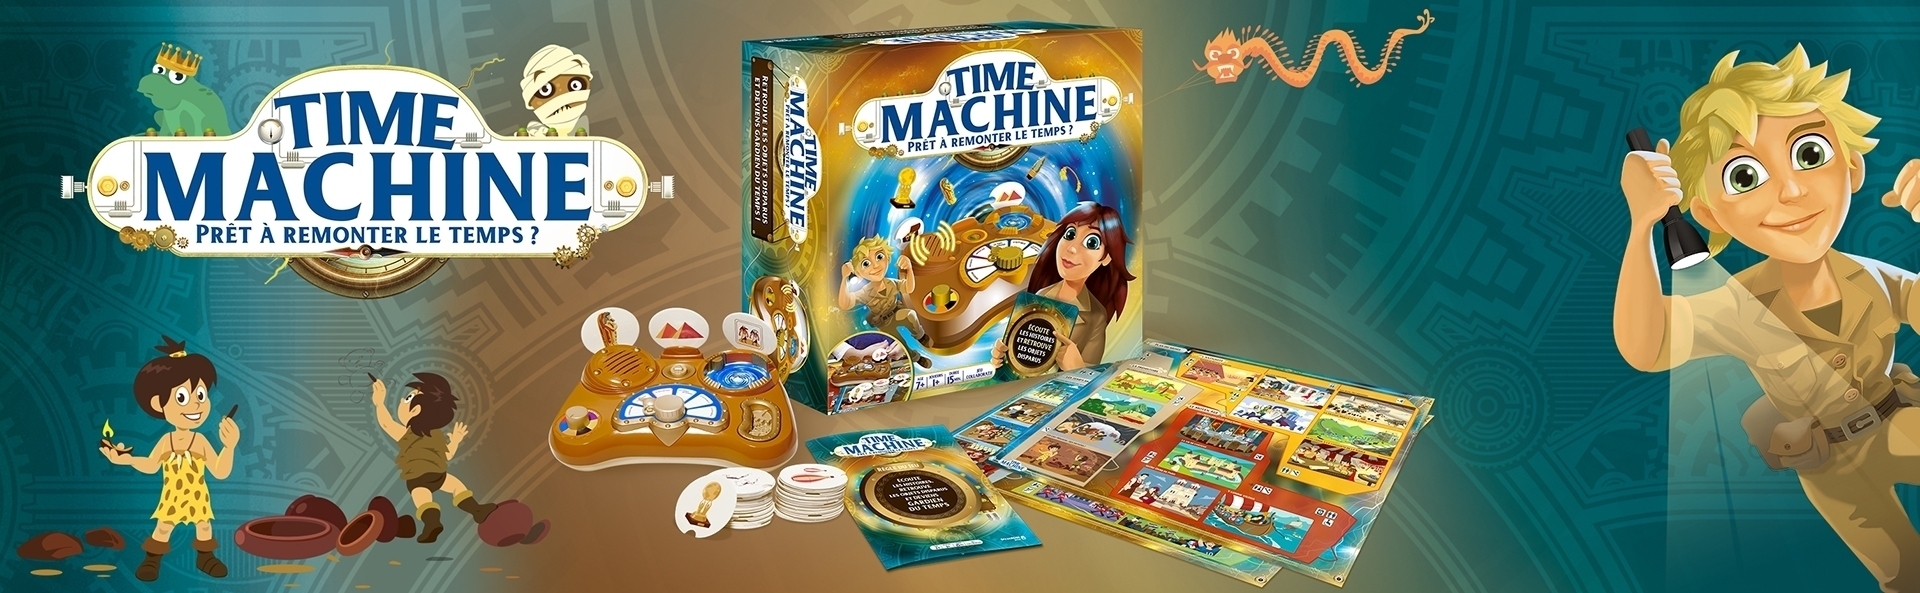 Time Machine, jeu de société de la marque Dujardin. Création graphique design pack et illustrations agence Les Aliens - campagne digitale, bannière Amazon